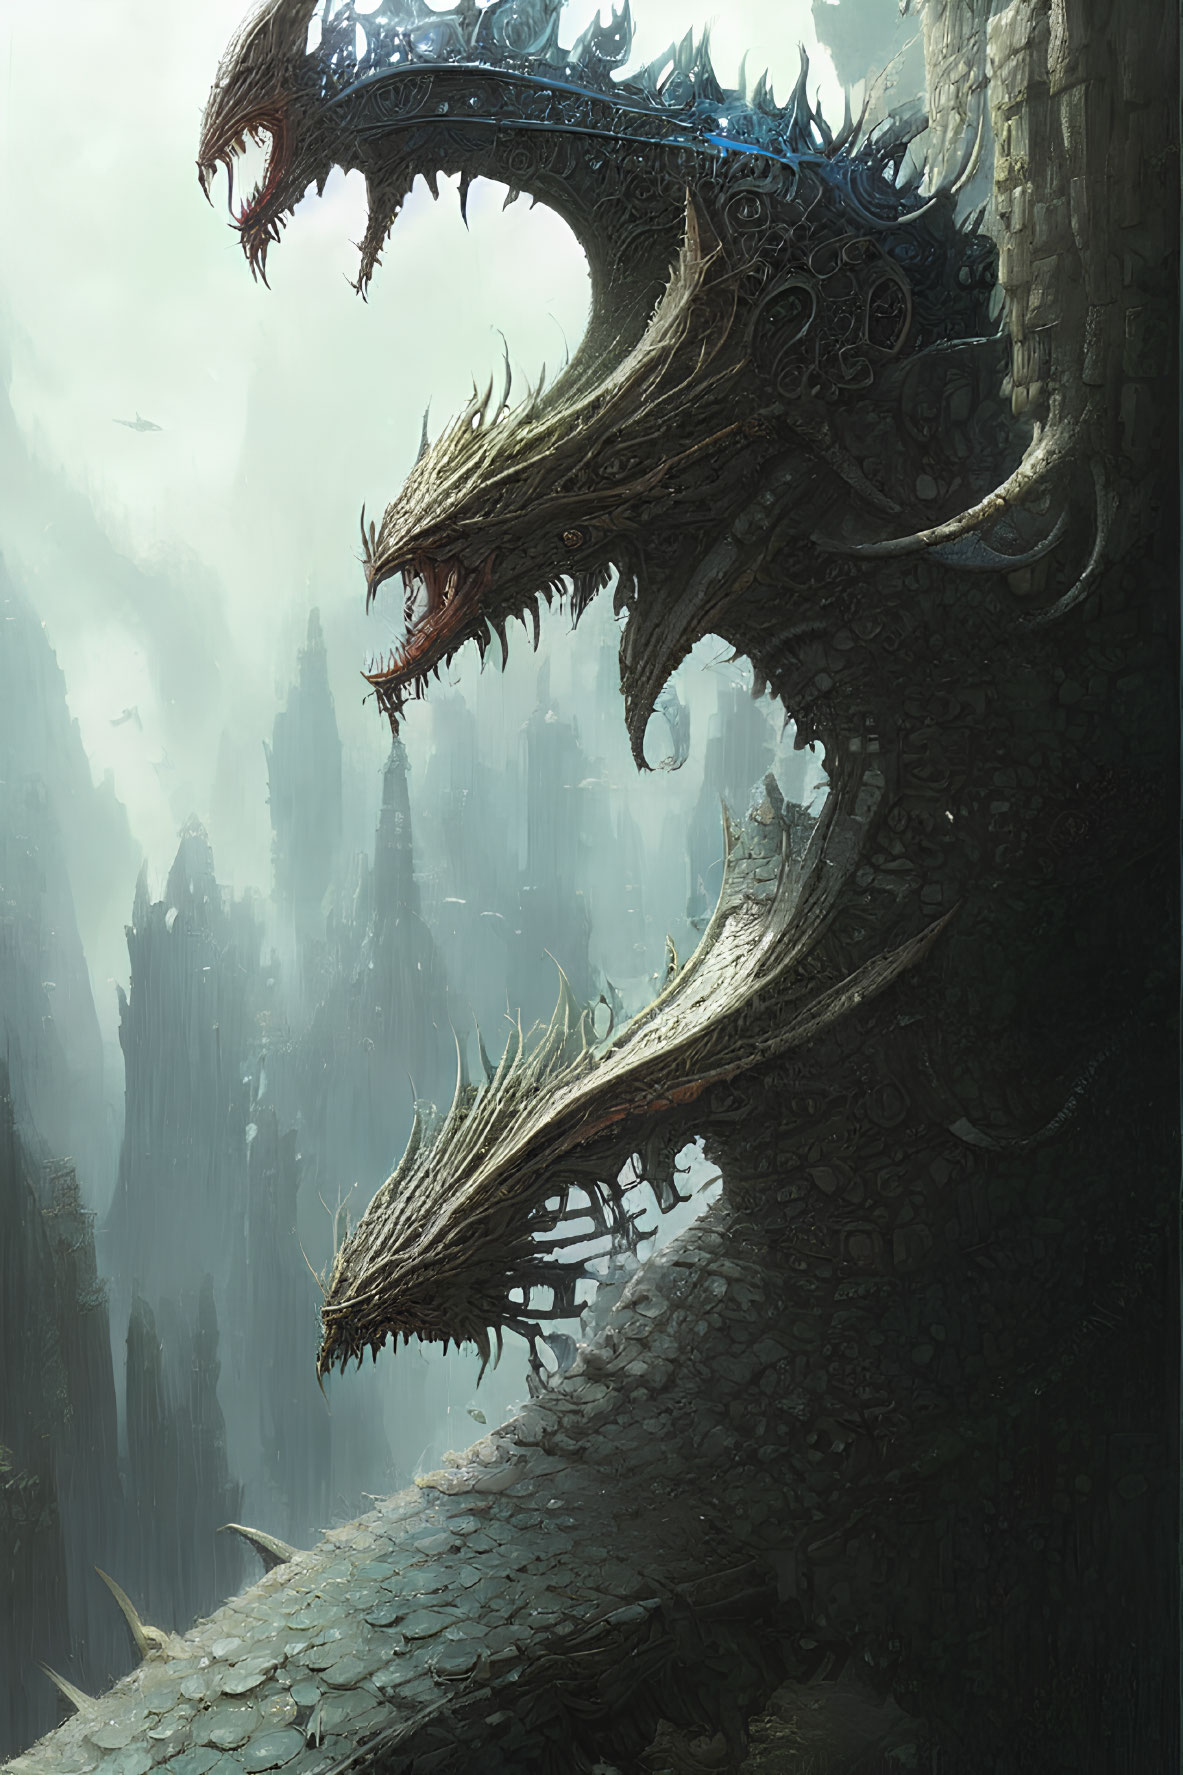 Majestic multi-headed dragon in gothic landscape